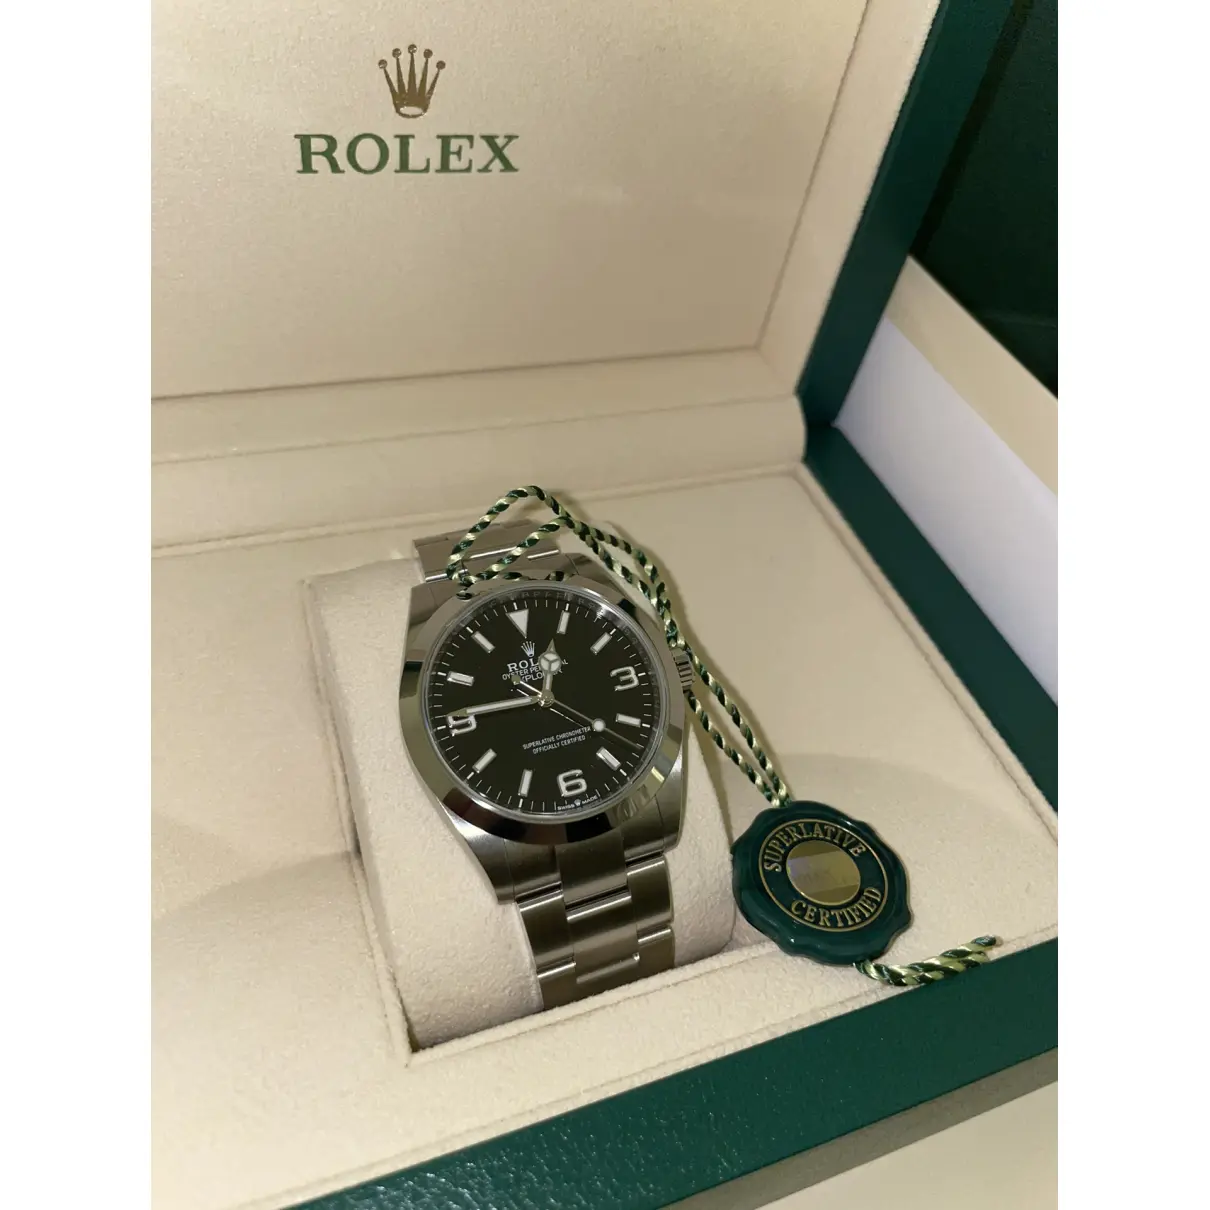 Buy Rolex Explorer watch online